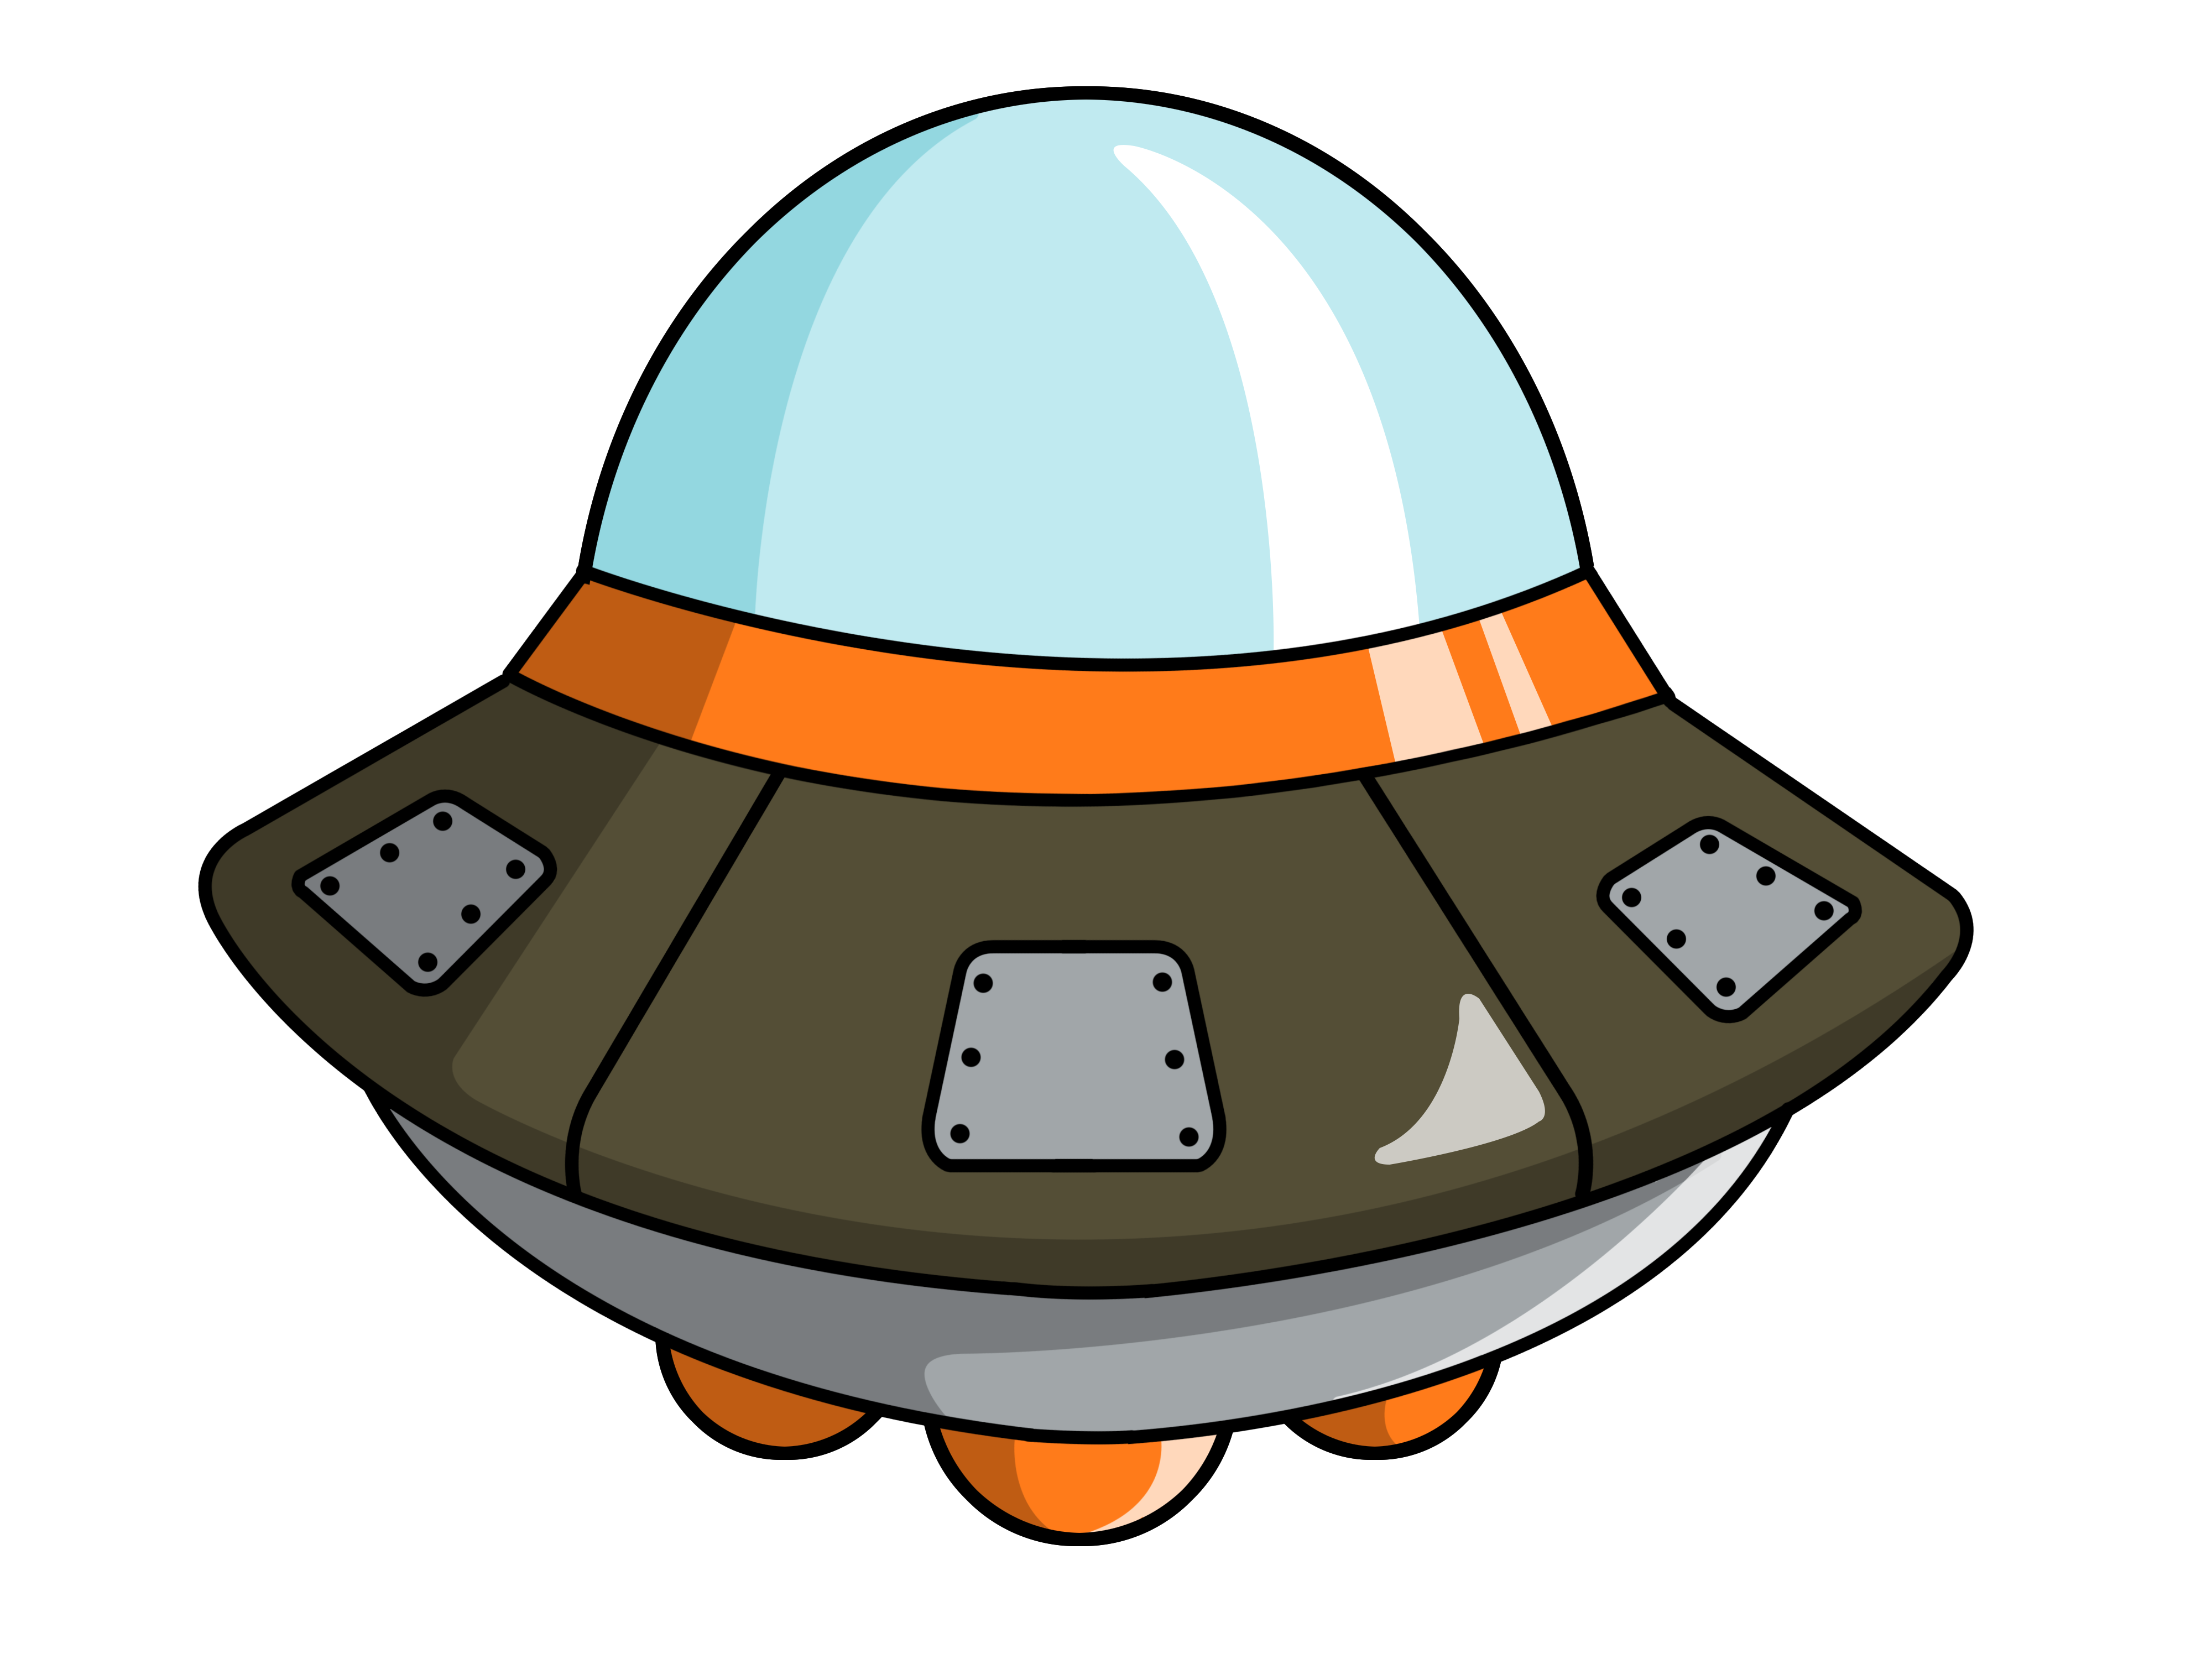 Cute spaceship clipart 2 - Alien Spaceship Clipart